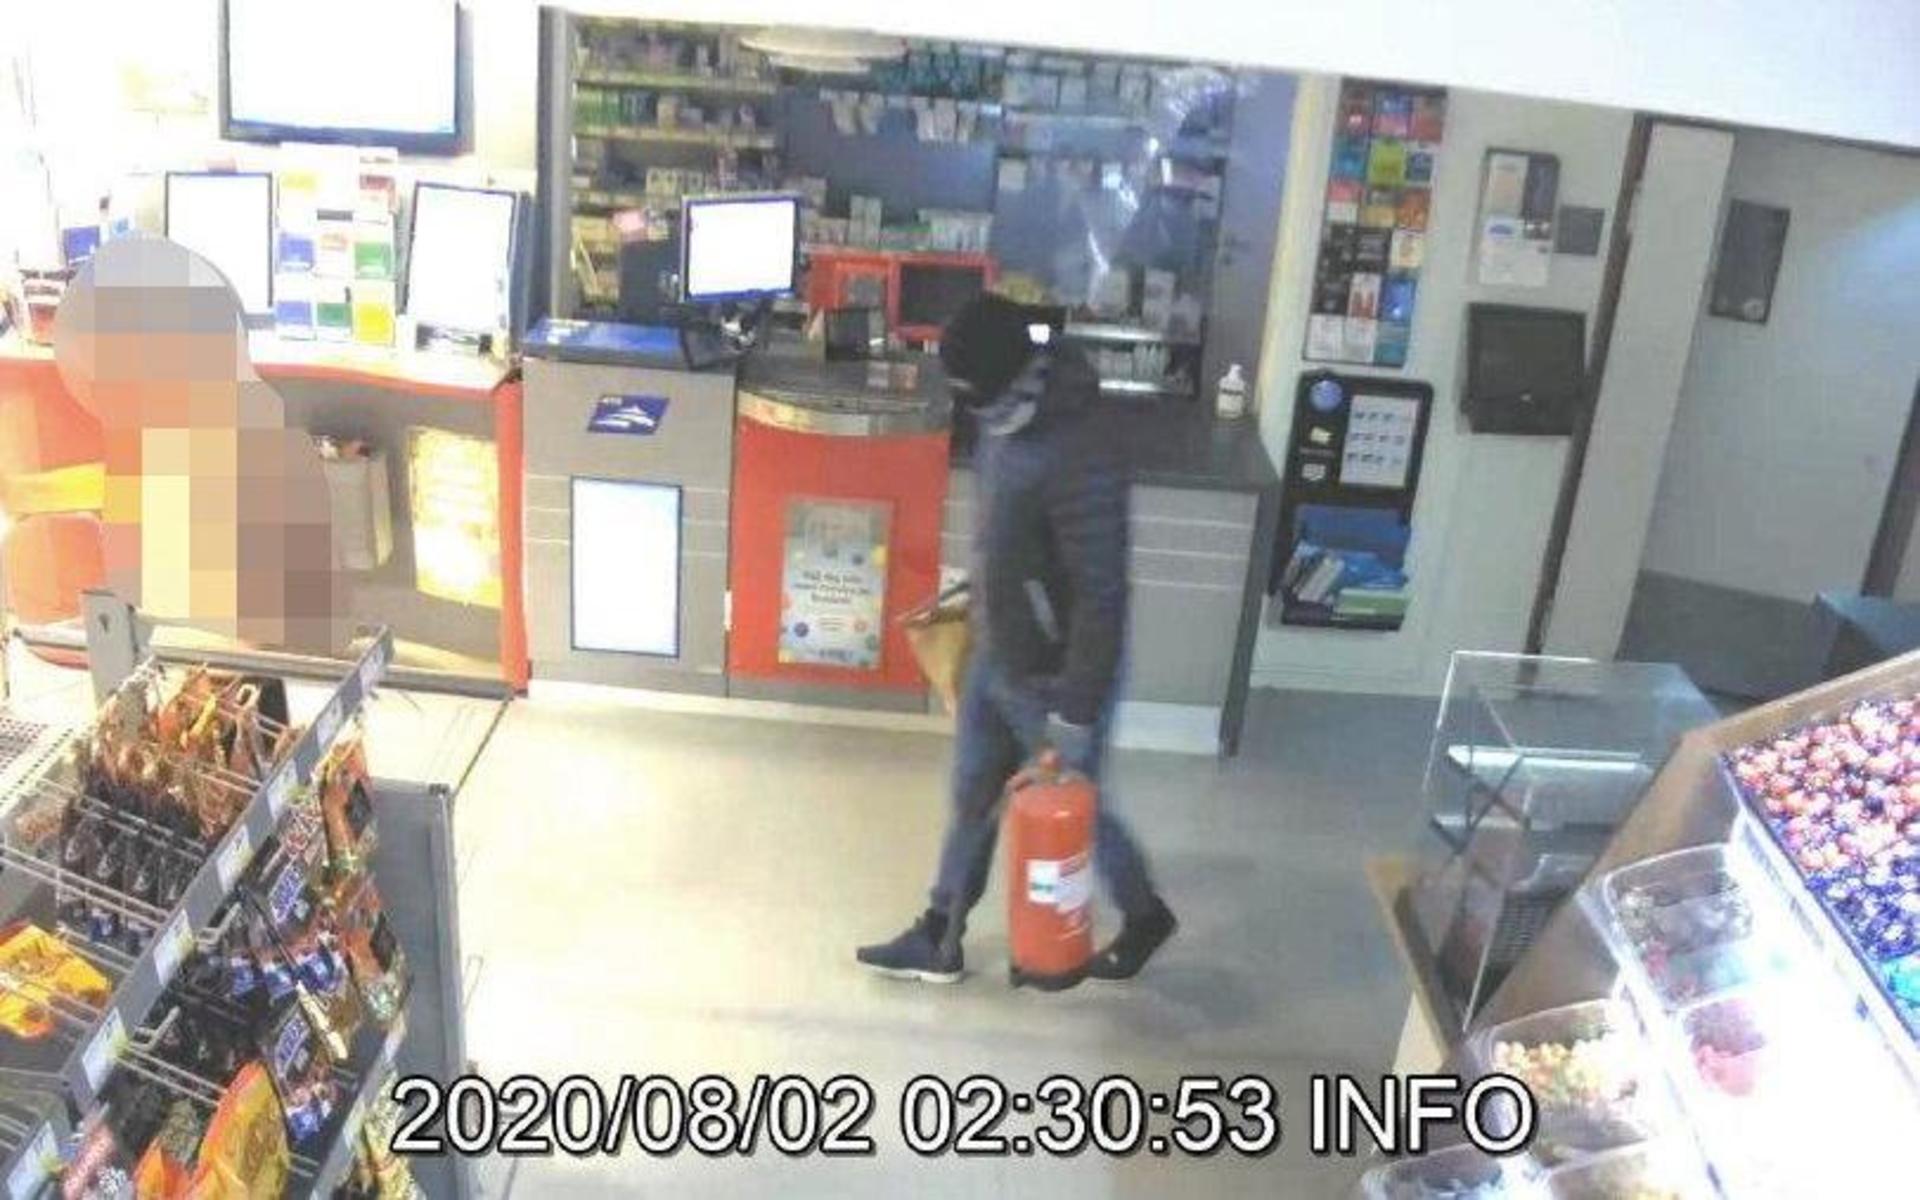 De dramatiska bilderna från butikens övervakningskamera ingår i polisens omfattande förundersökning om rånet. Nu har en 31-årig laholmare åtalats för grovt rån.